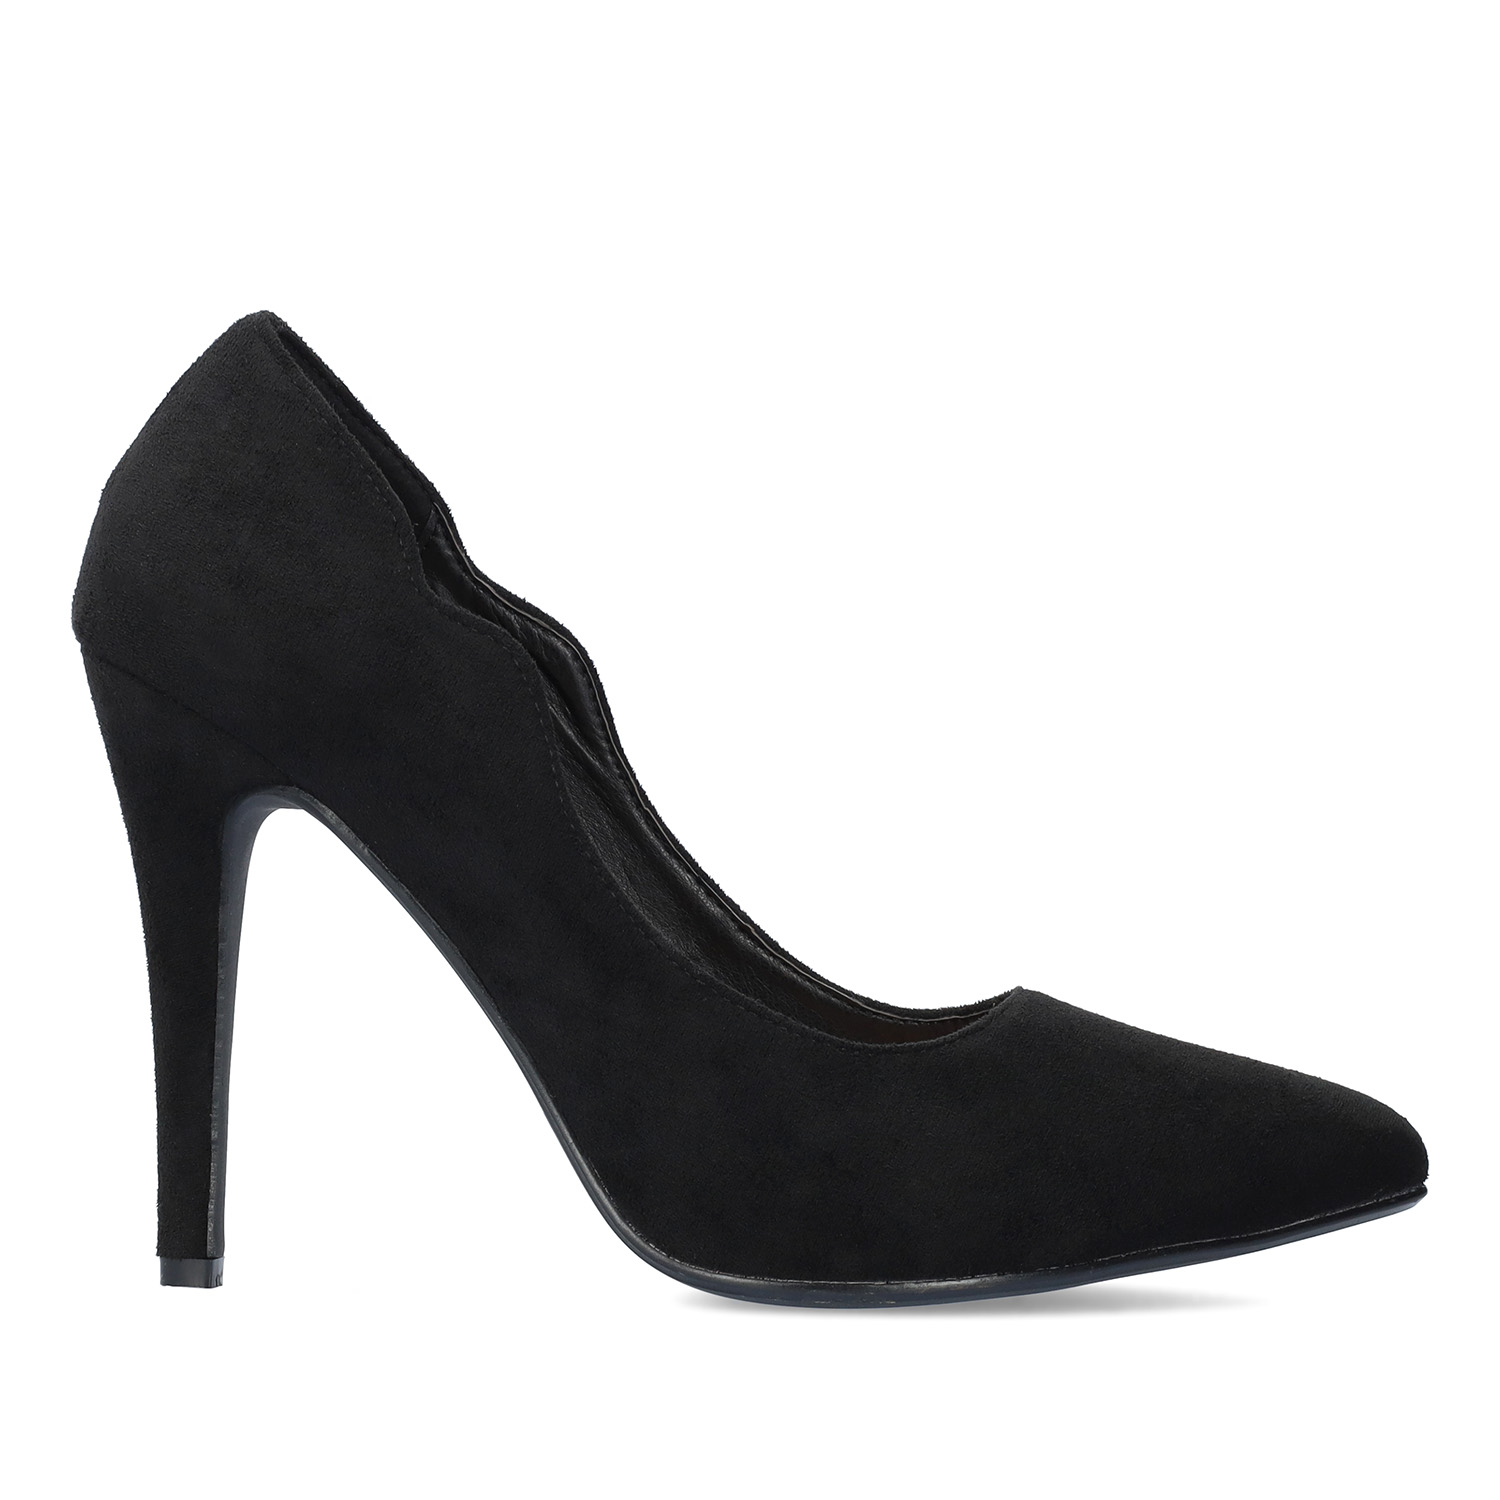 Fine tip stilettos in black faux suede. 